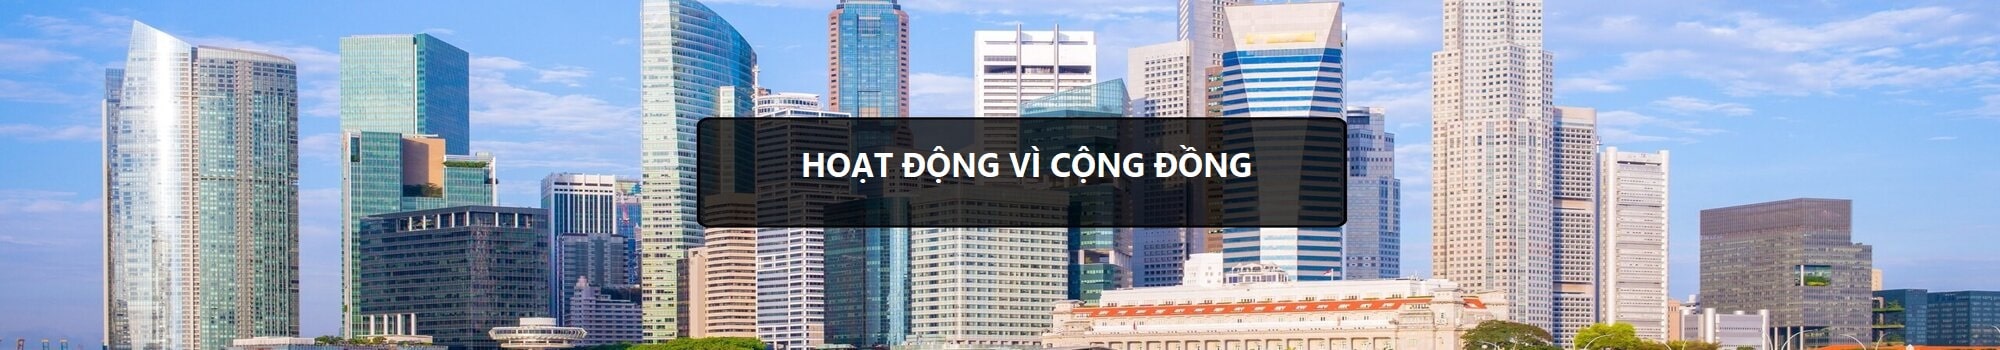 1. hang-luat-alegal - hoat-dong-vi-cong-dong